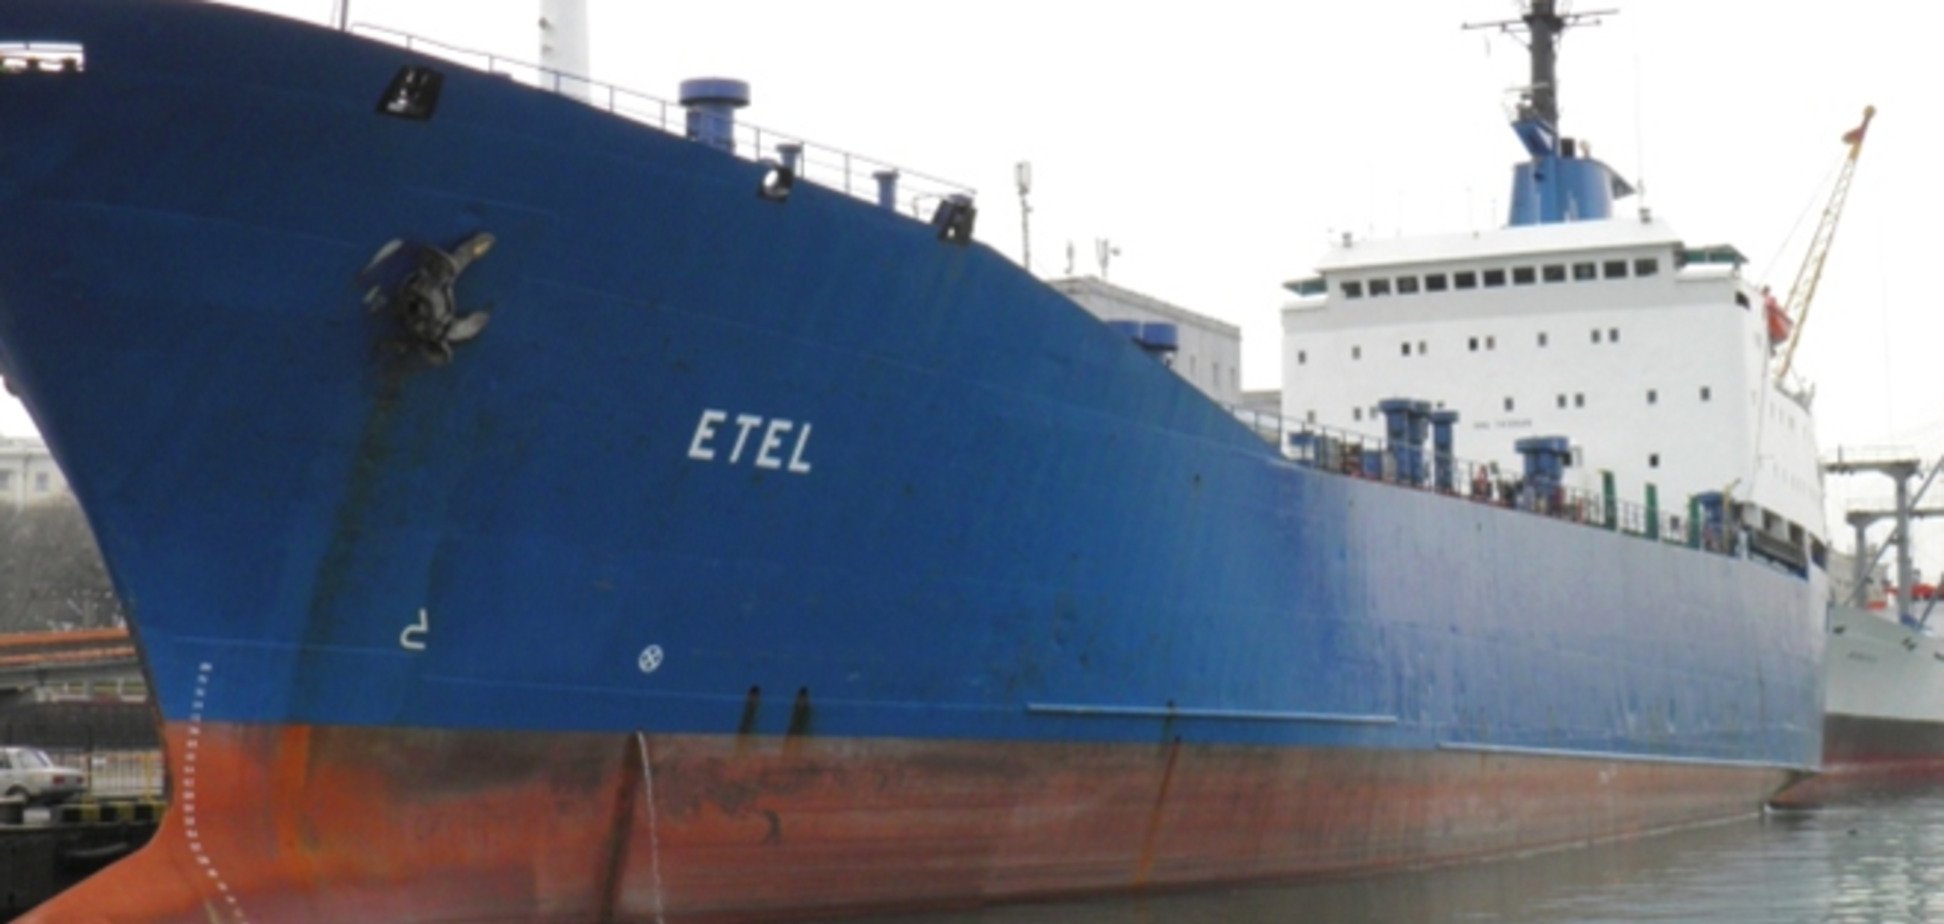 За судно Etel с украинским экипажем захватчики требуют $12 млн